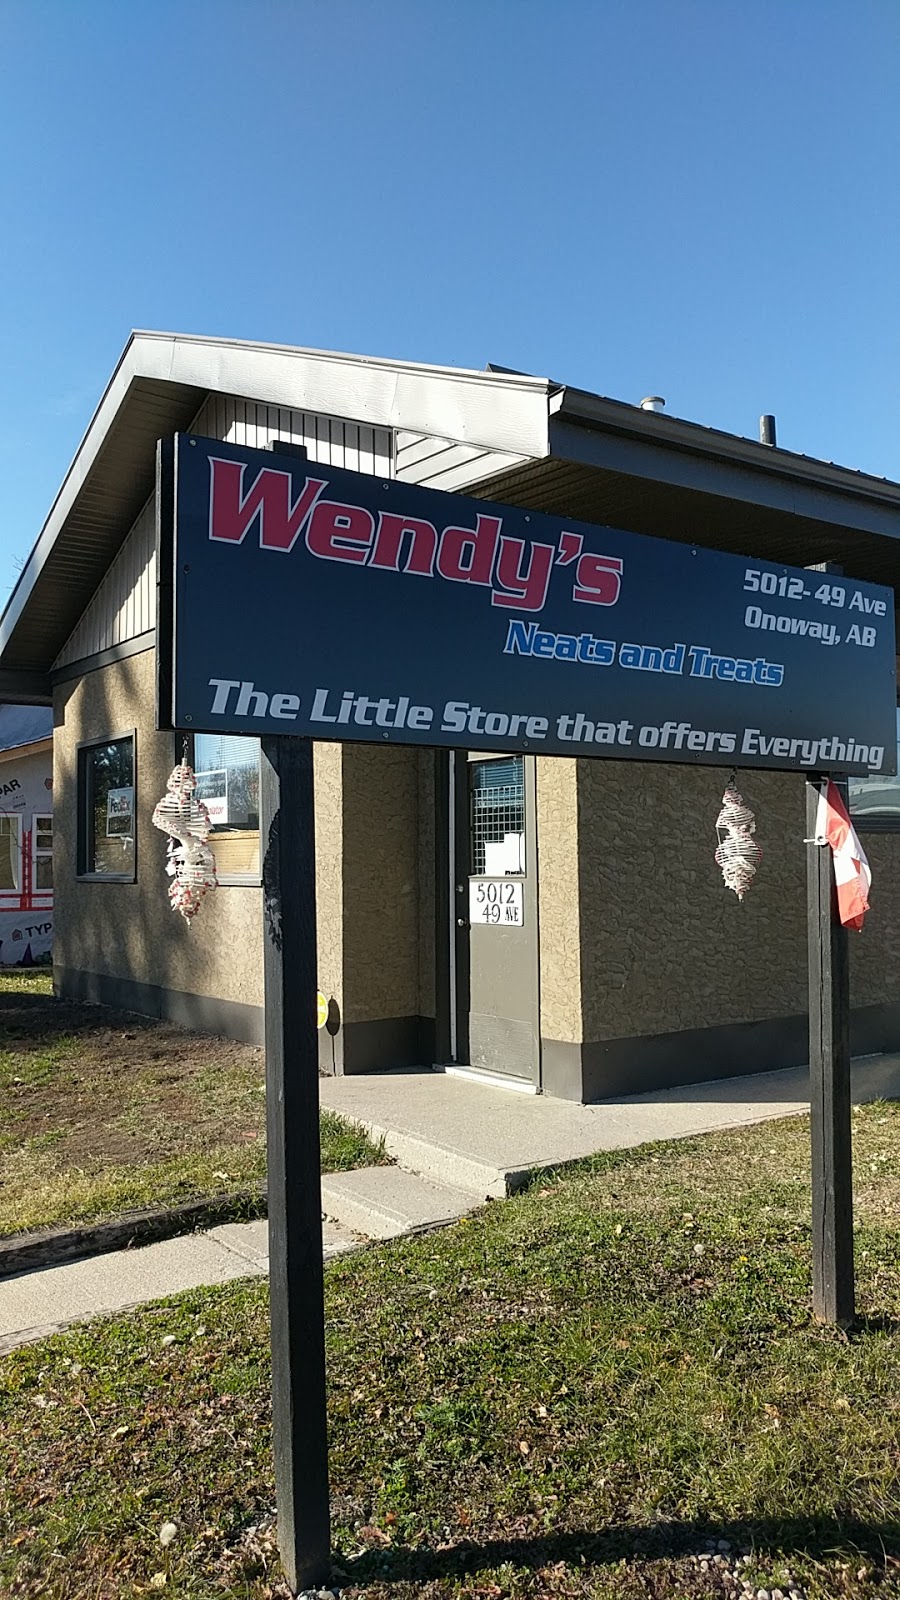 Wendys Neats And Treats (Purolator) | 5012 49 Ave, Onoway, AB T0E 1V0, Canada | Phone: (780) 967-0351